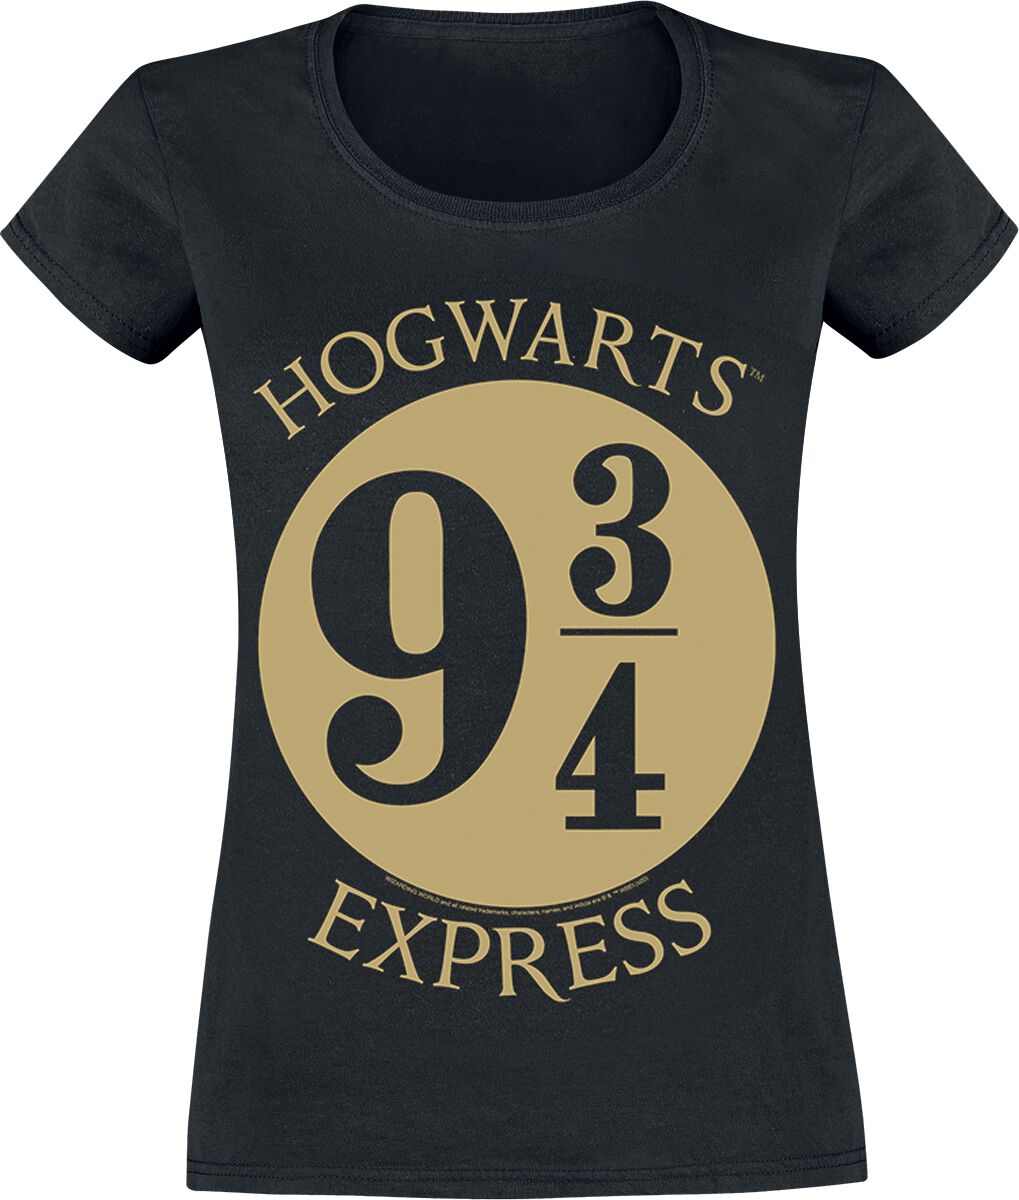 Harry Potter Platform 9 3/4 T-Shirt black